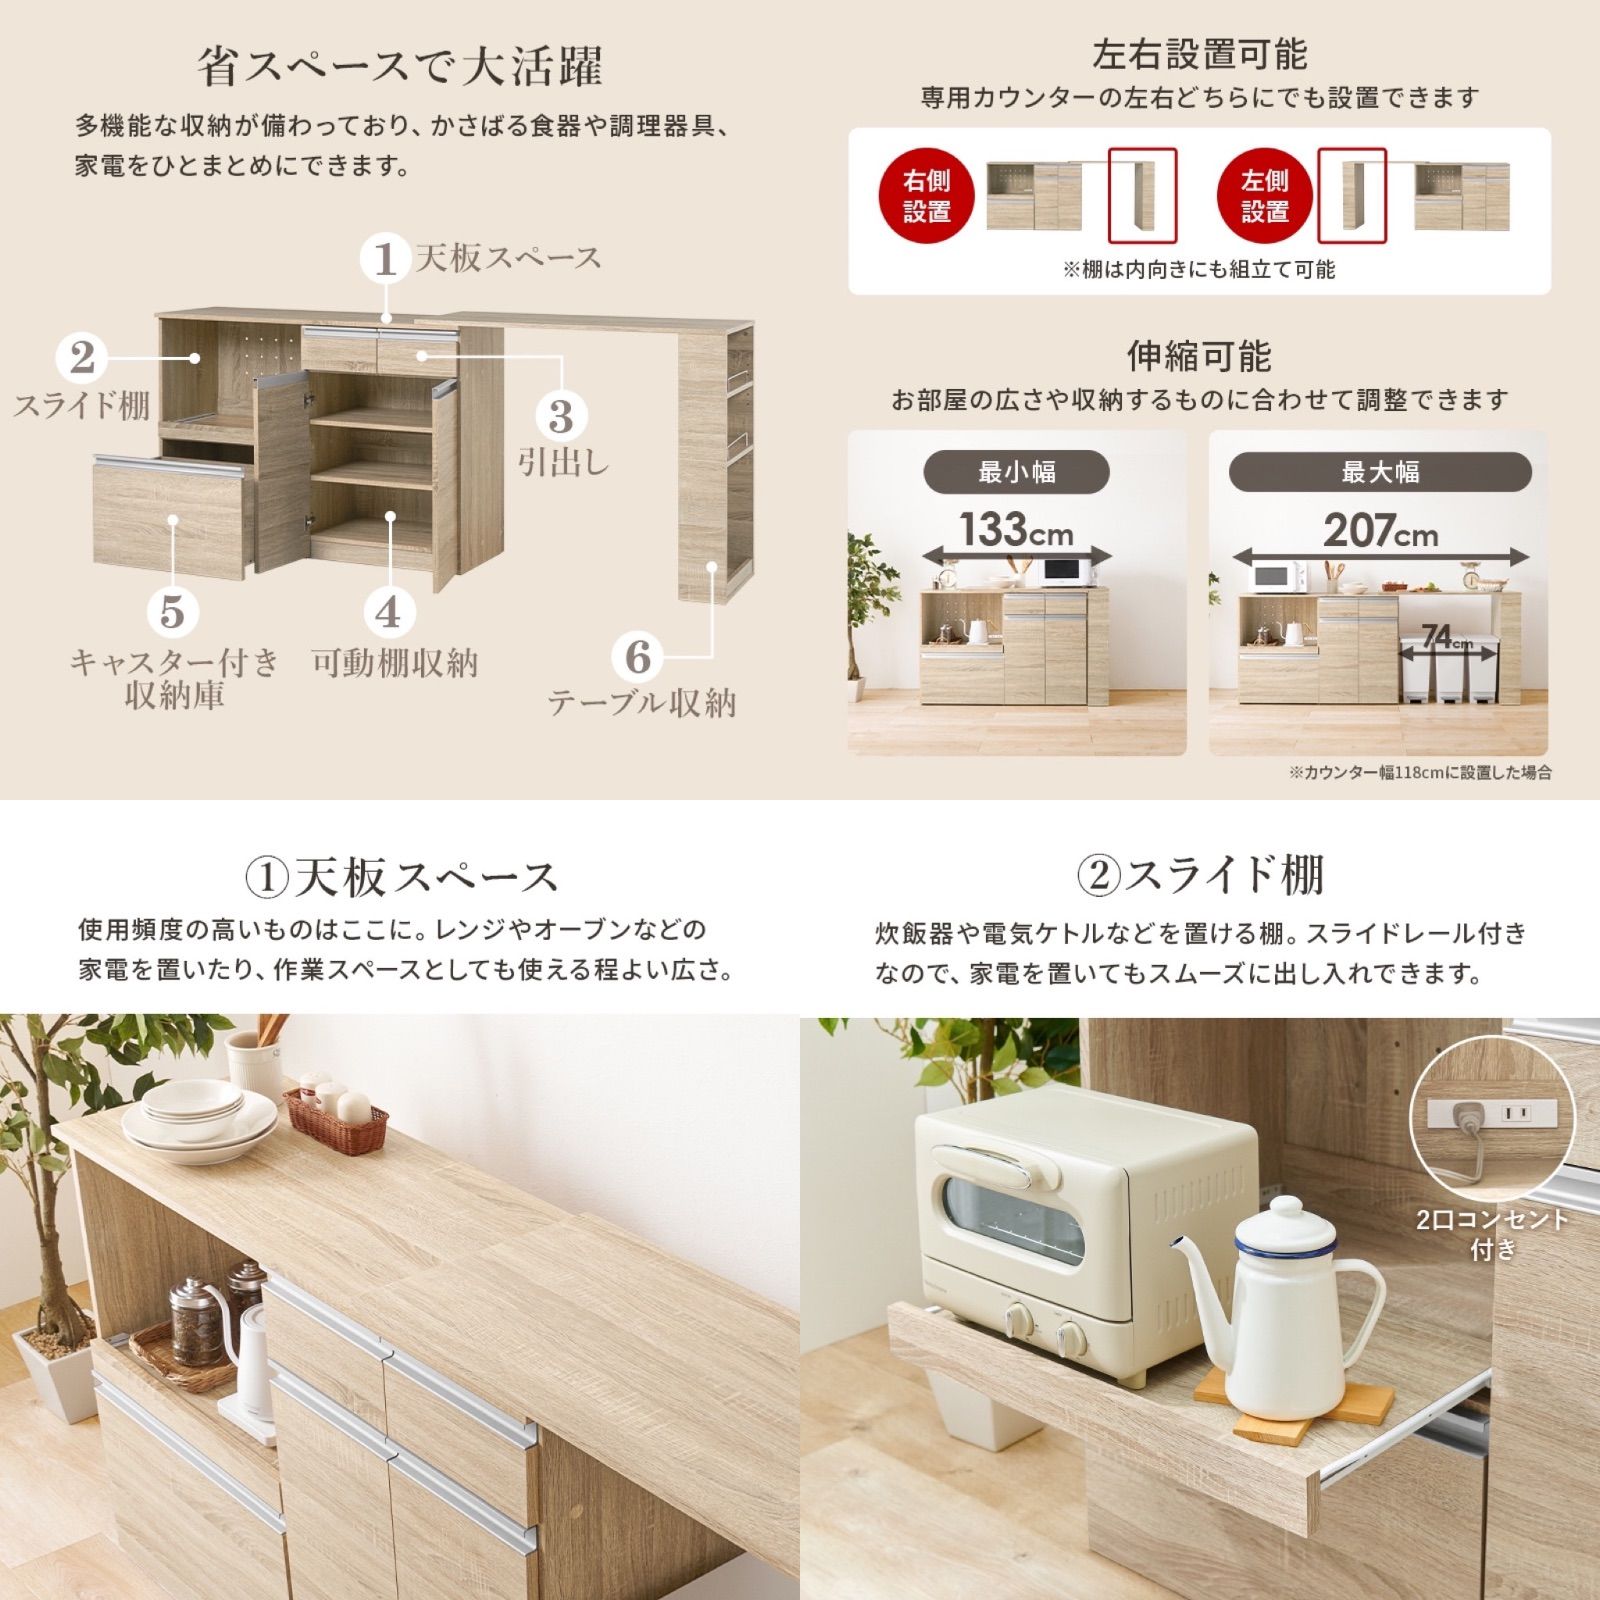 伸縮 キッチンカウンター コンセント スライド 収納 食器 レンジ台 133〜207 - メルカリ